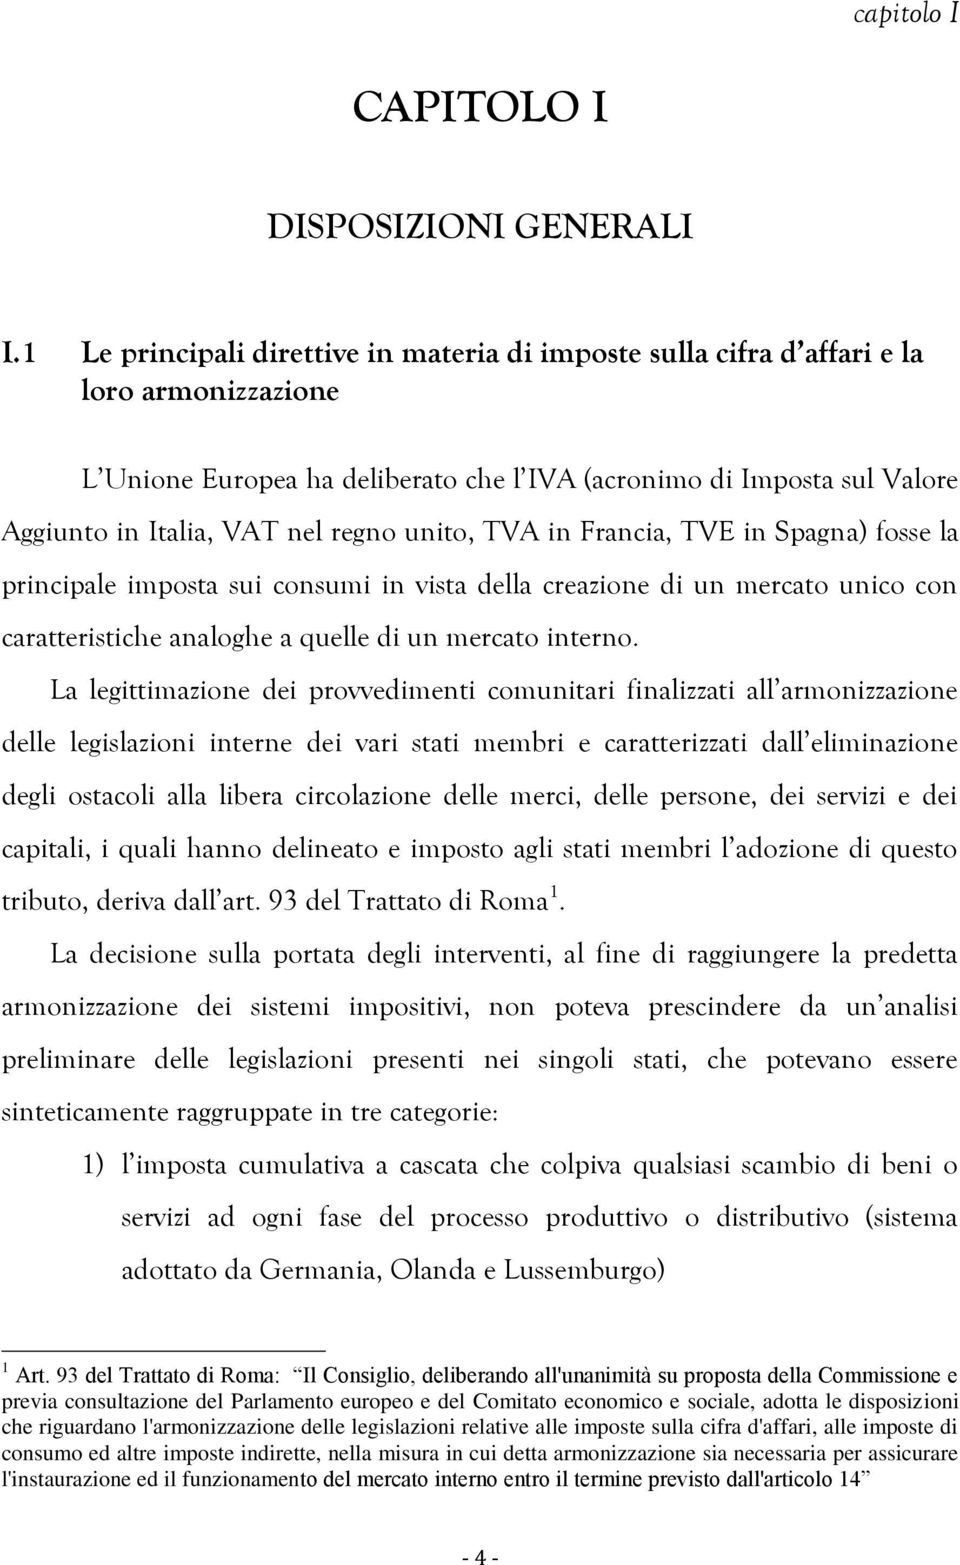 regno unito, TVA in Francia, TVE in Spagna) fosse la principale imposta sui consumi in vista della creazione di un mercato unico con caratteristiche analoghe a quelle di un mercato interno.